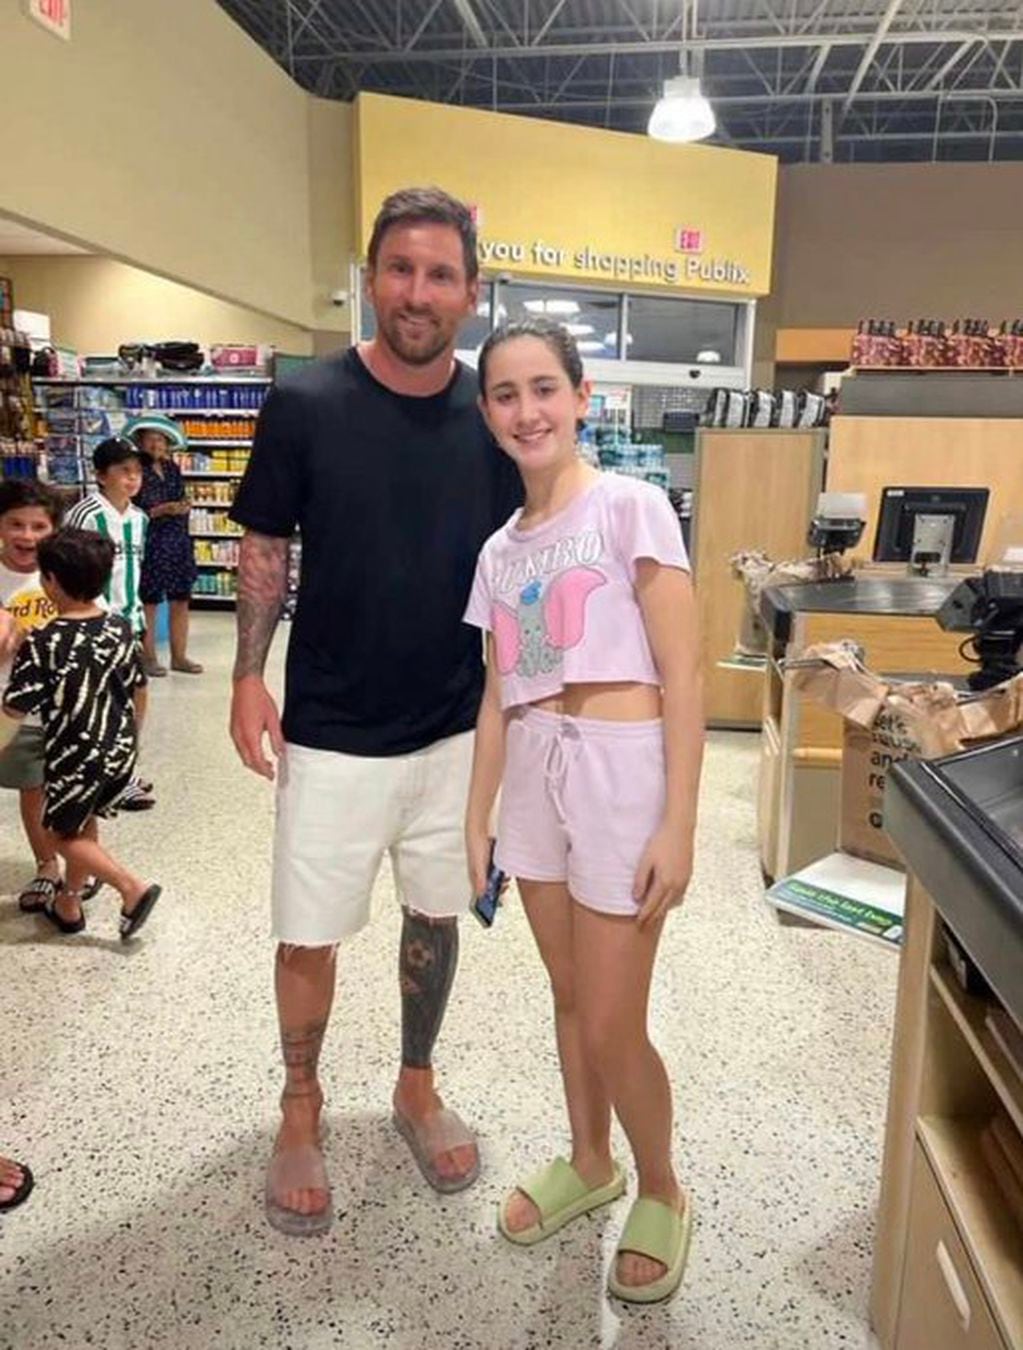 El astro del fútbol fue con su familia a comprar a un supermercado.